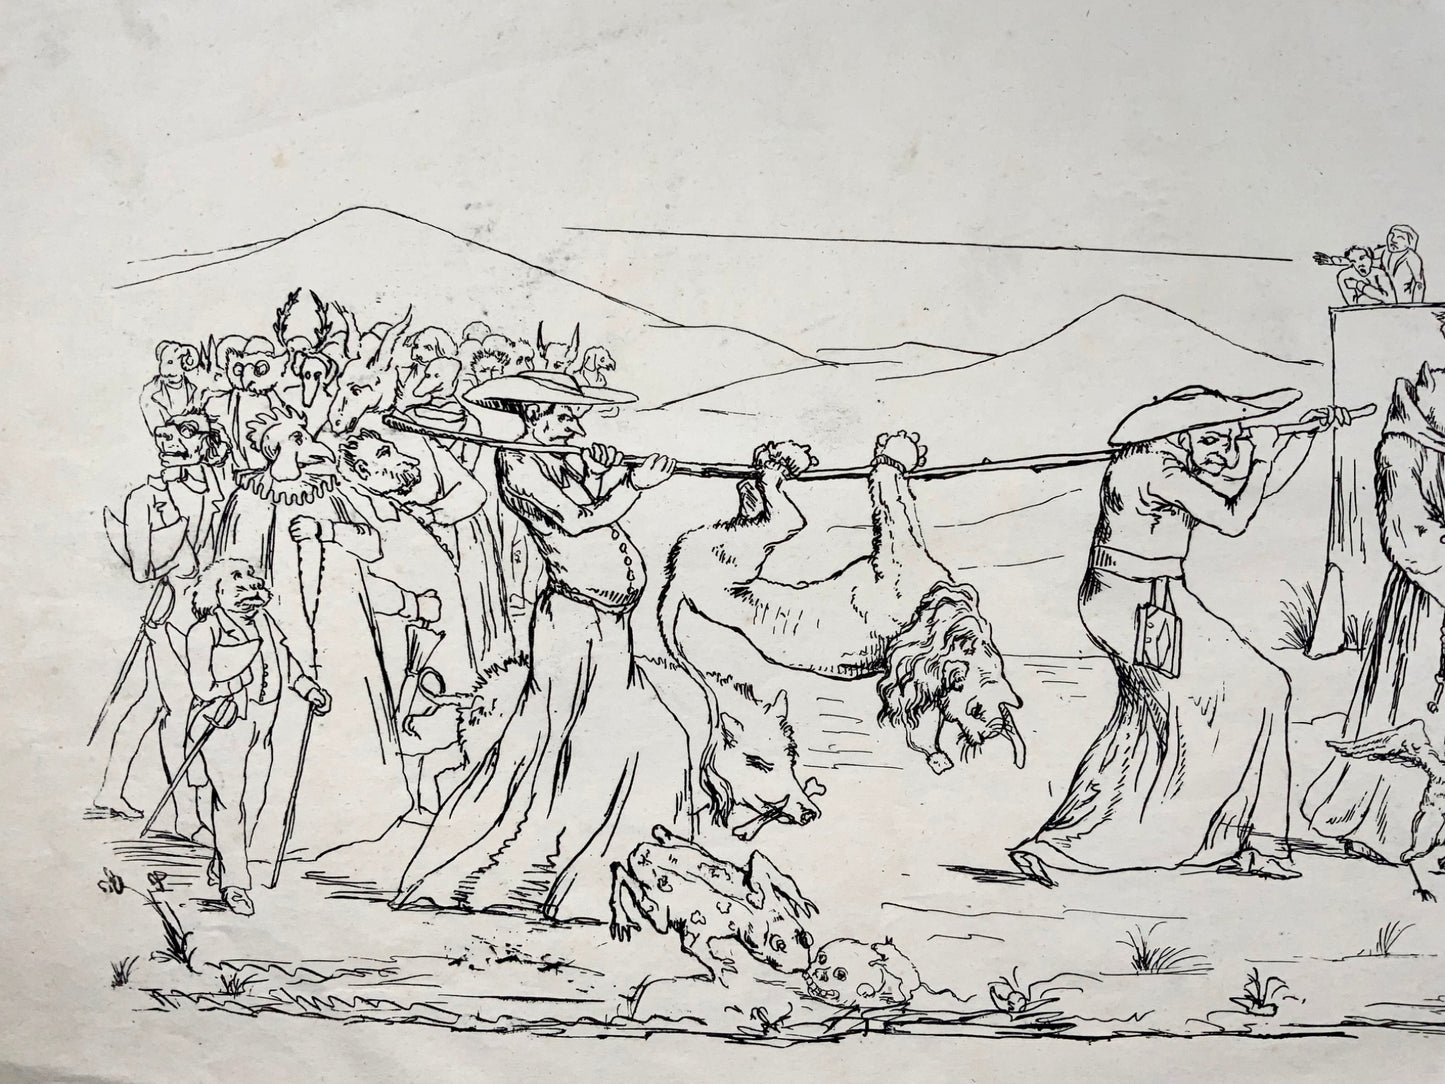 1845 Satirical Broadside, funeral / murder, Joseph Leu von Ebersol, Switzerland